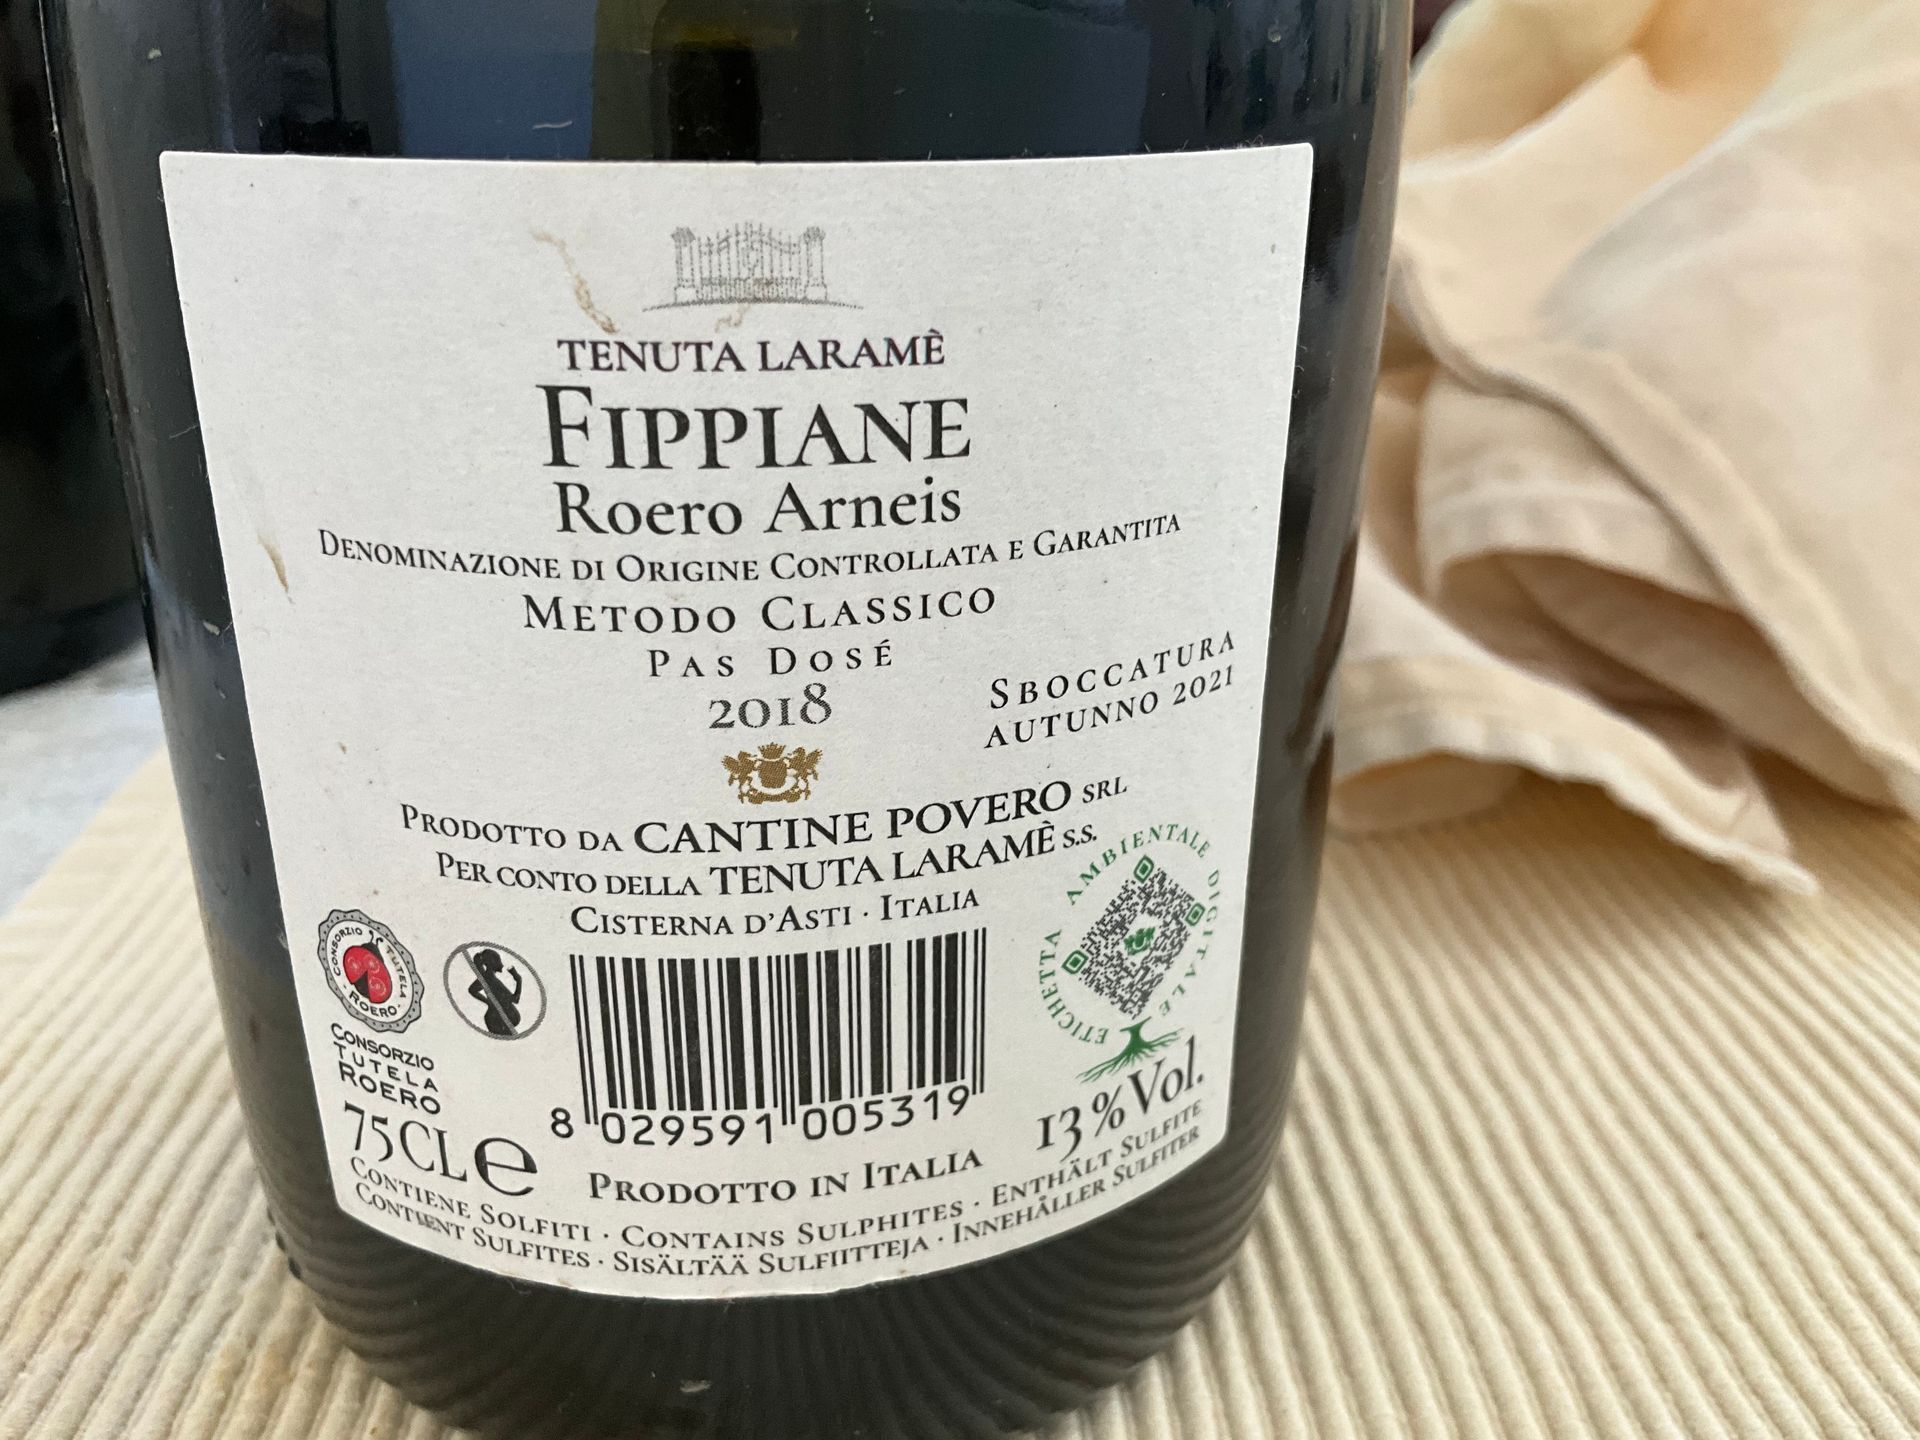 eine Flasche Tenuta Laramè Fippiane Roero Arneis Pas Dosé 2018
 steht neben zwei Gläsern